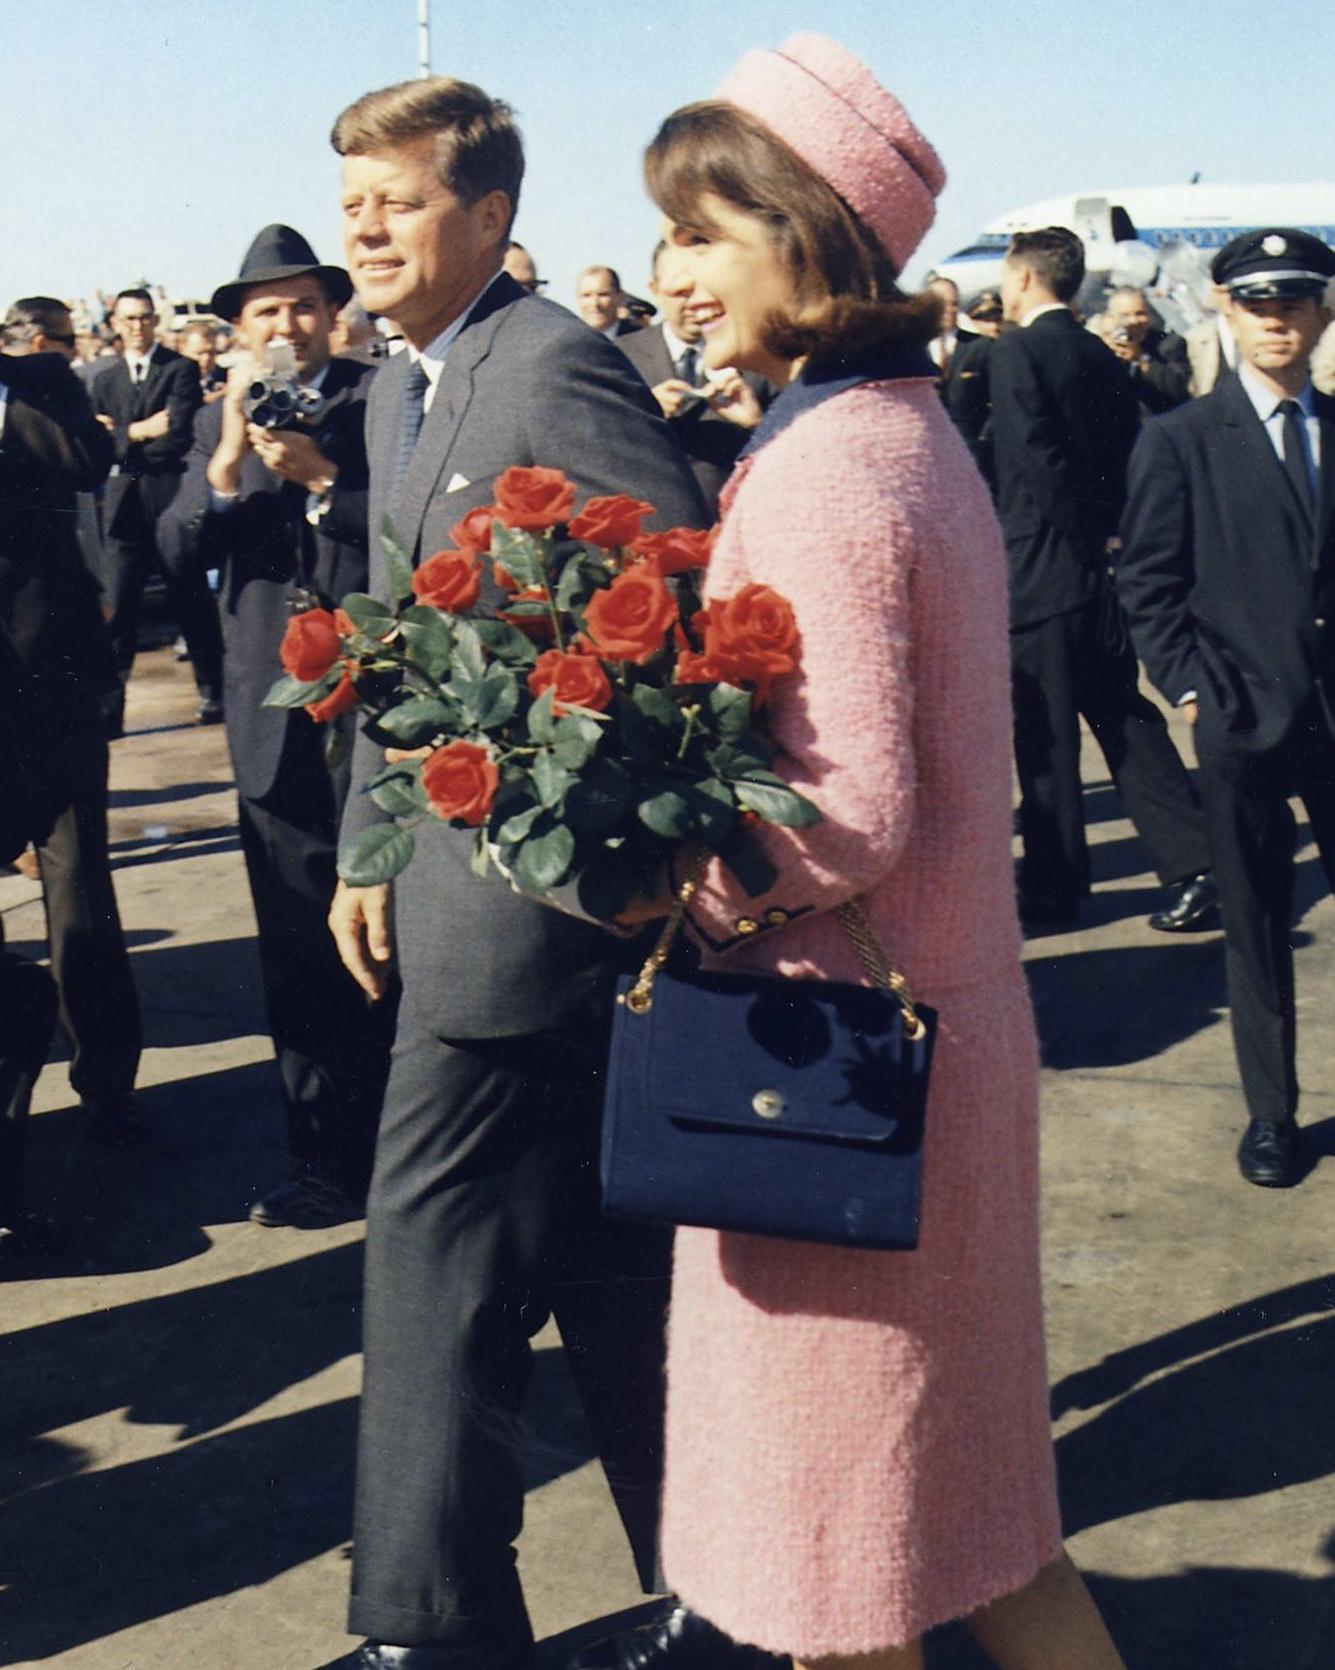 Jacqueline Kennedy a rămas cu sângele președintelui pe ea. ”Nu vreți să schimbați haina?” ”Nu, stau așa. Omenirea să vadă ce i-au făcut lui John!”